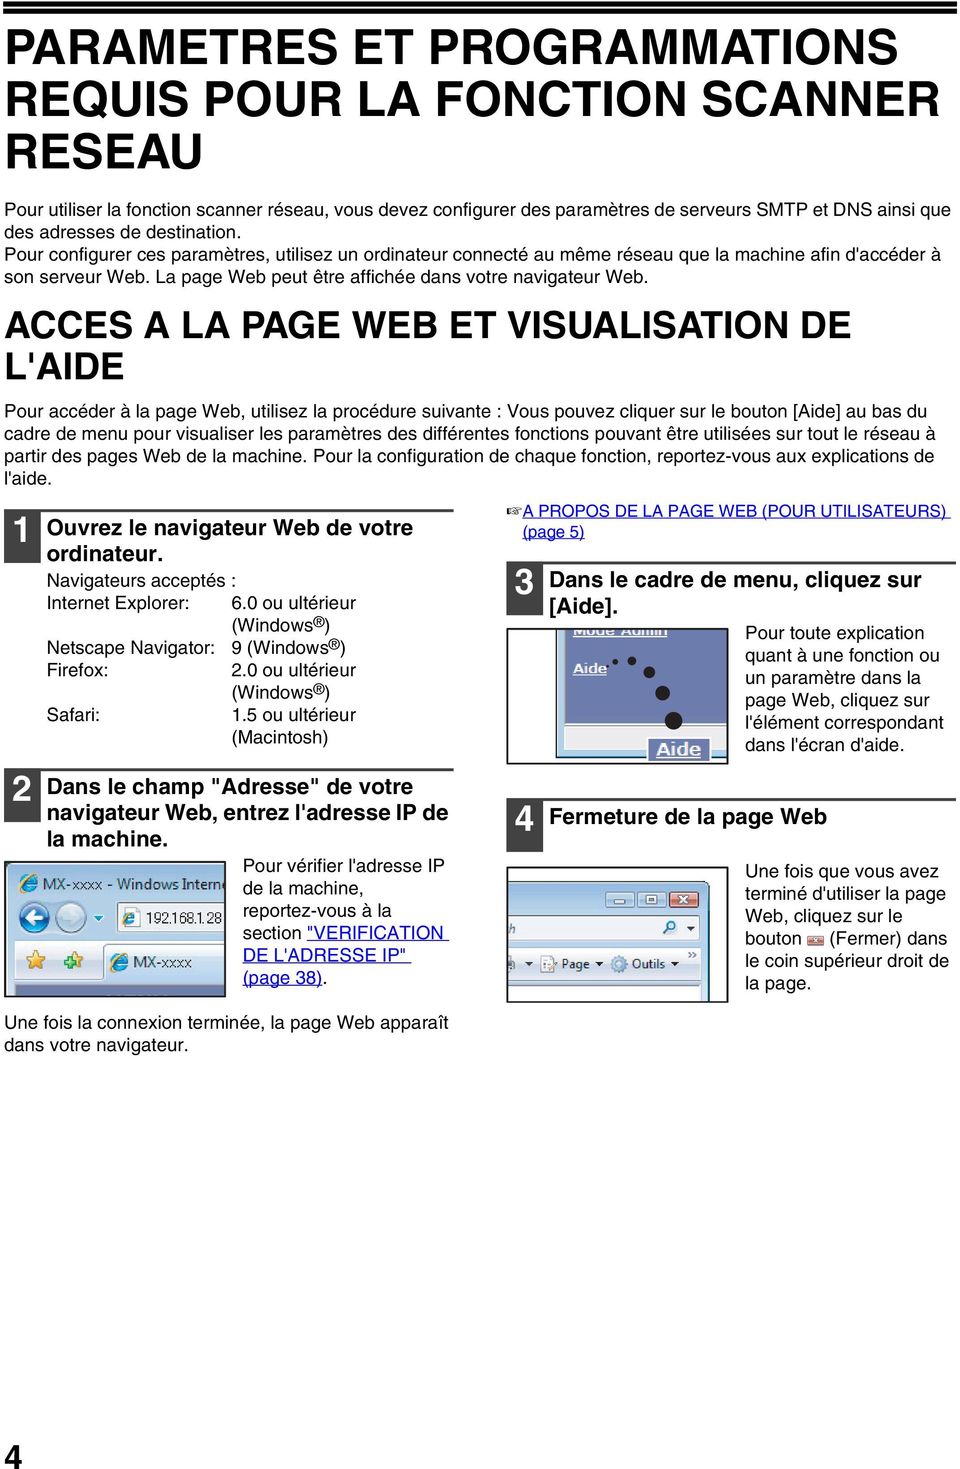 ACCES A LA PAGE WEB ET VISUALISATION DE L'AIDE Pour accéder à la page Web, utilisez la procédure suivante : Vous pouvez cliquer sur le bouton [Aide] au bas du cadre de menu pour visualiser les